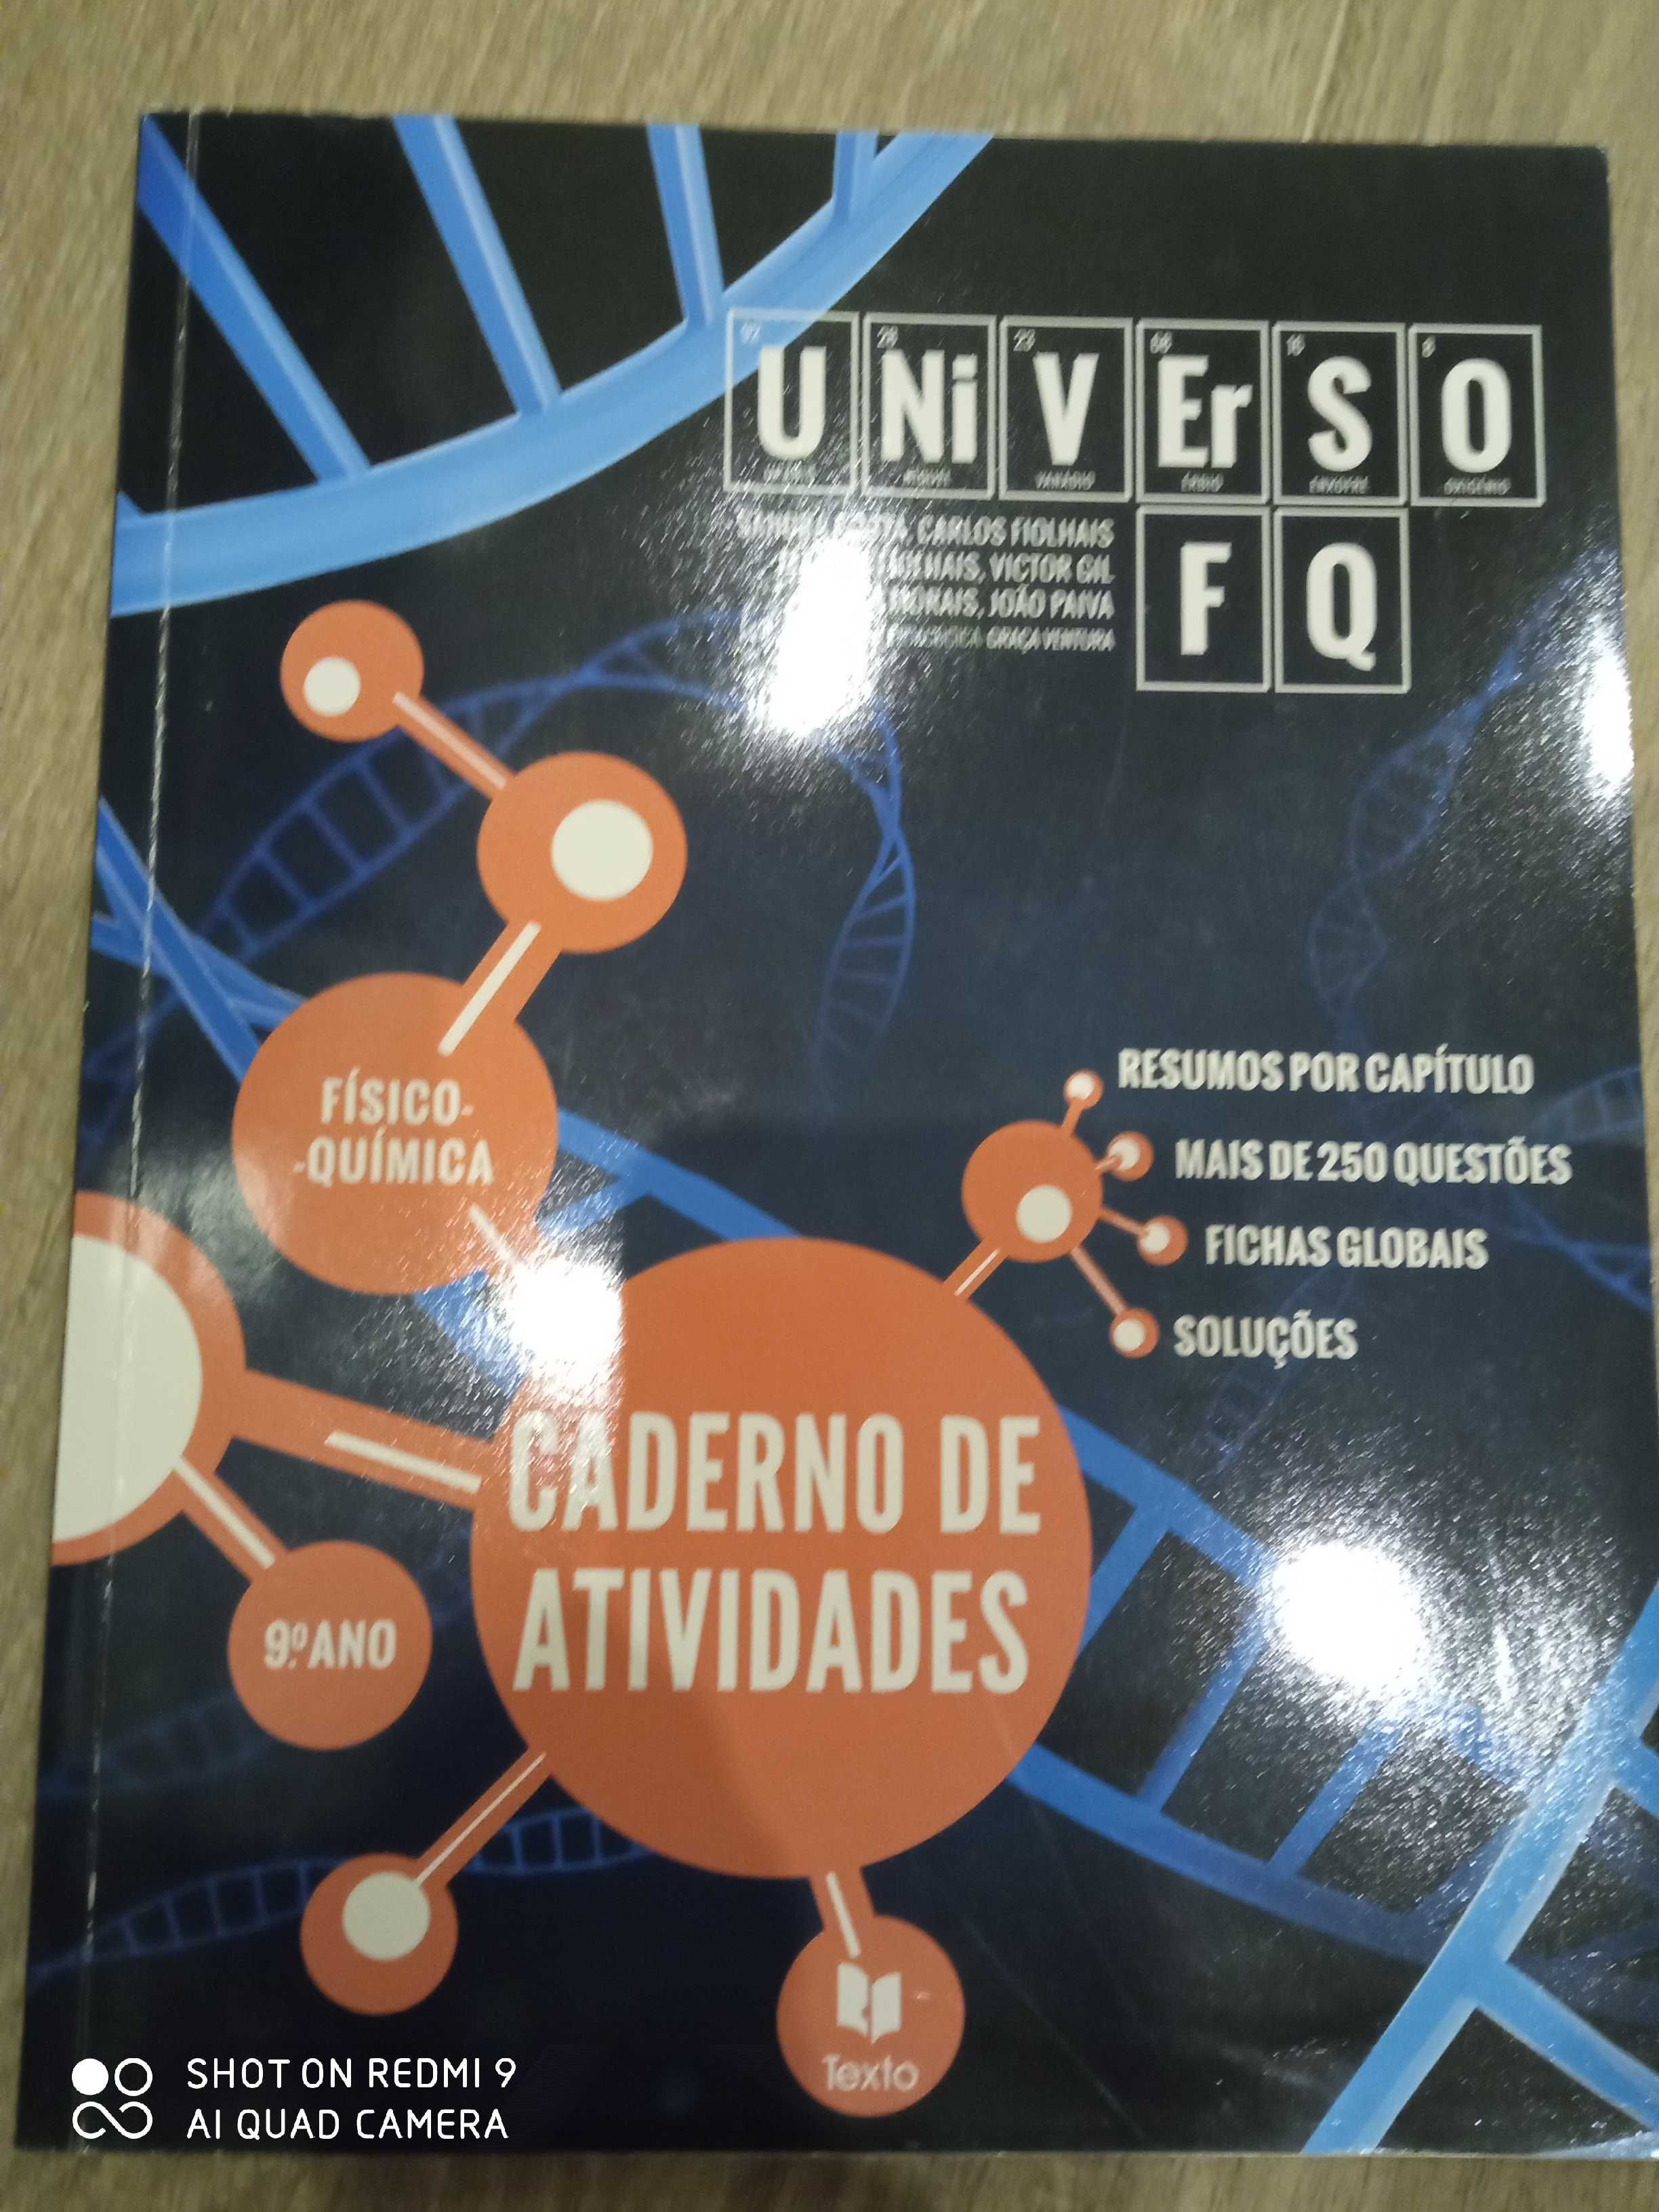 Caderno de atividades Universo FQ - Fisico-Quimica - 9º Ano